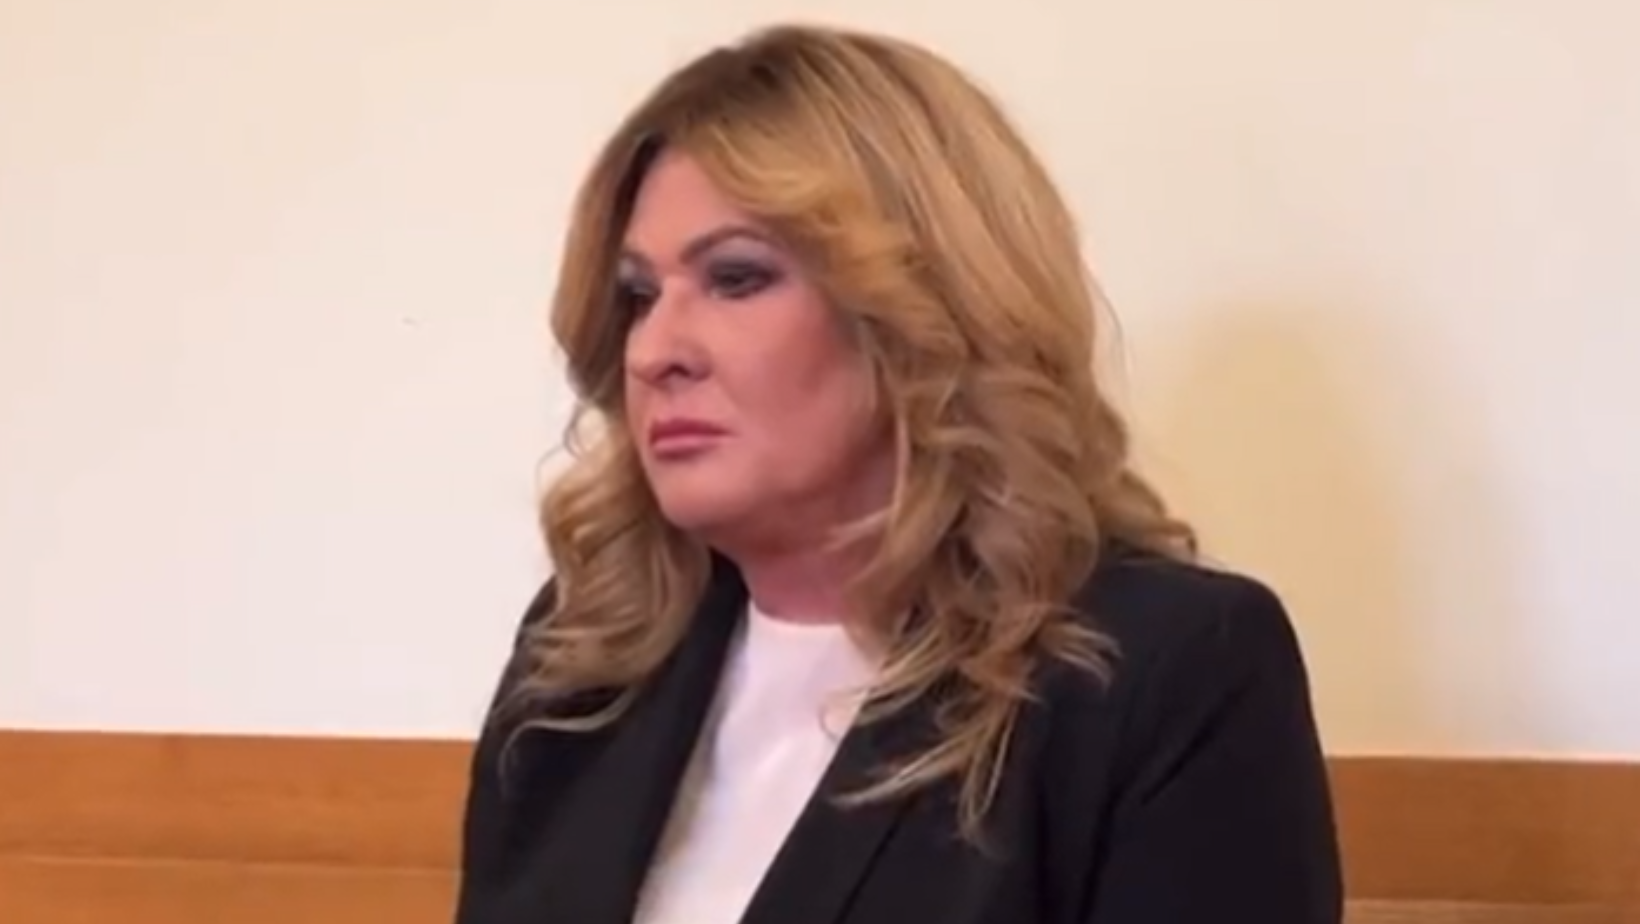 Beata Kozidrak znowu w sądzie